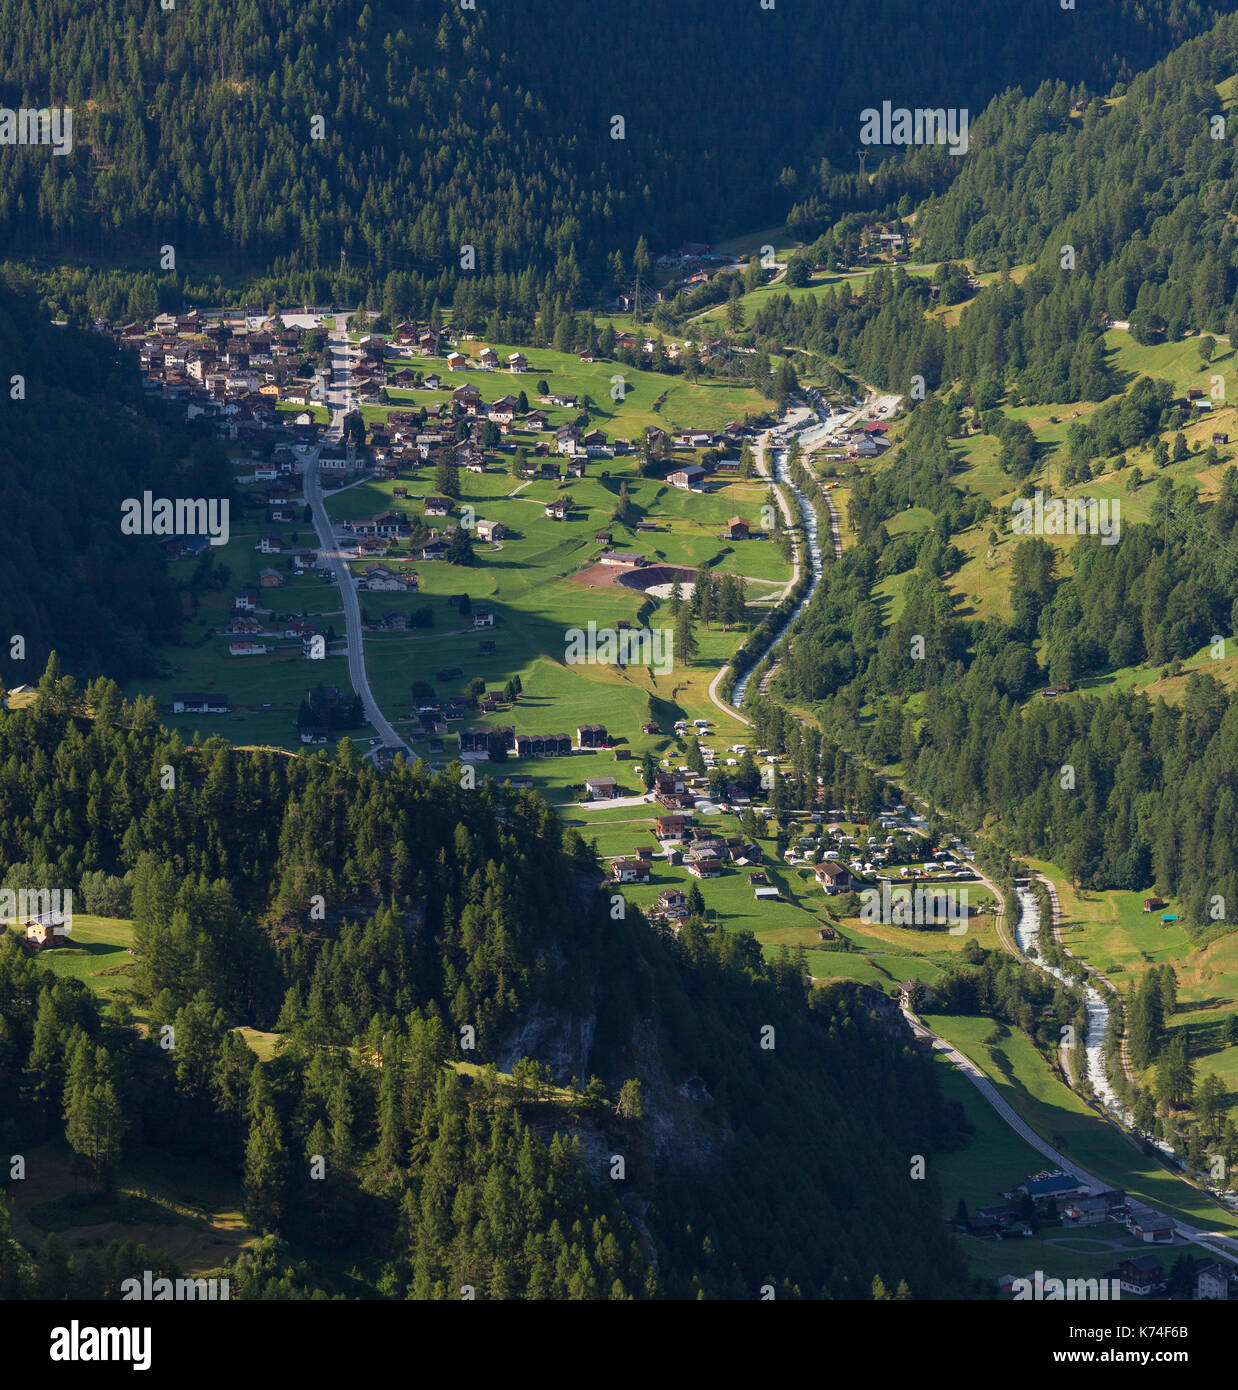 Les hauderes, Svizzera - les hauderes, un villaggio svizzero nelle alpi Pennine nel canton Vallese Foto Stock